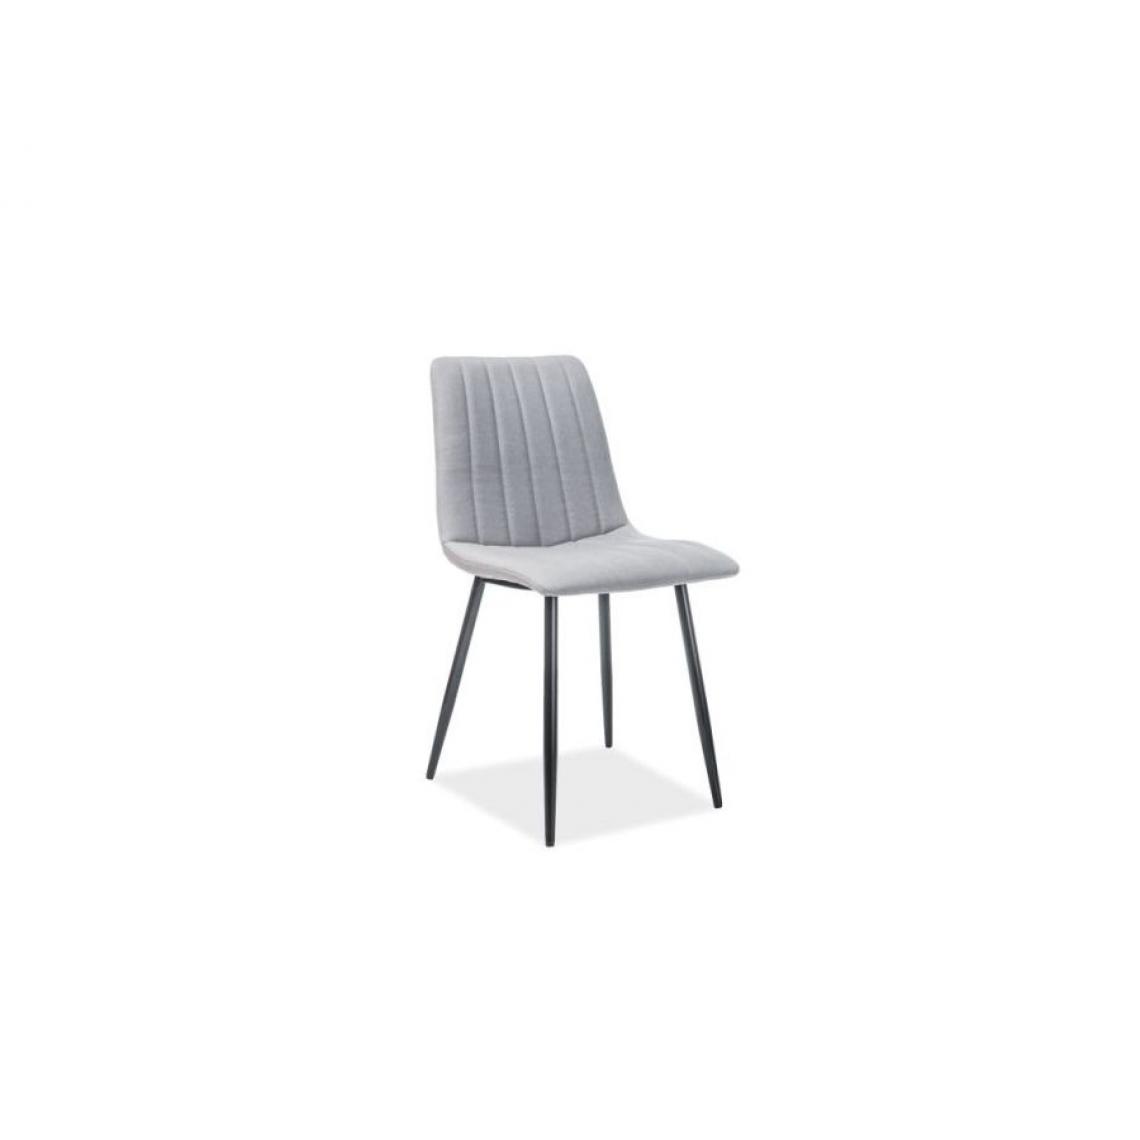 Hucoco - ARAN | Chaise moderne cusine salle à manger bureau | Dimensions 88x45x40 cm | Tissu haute qualité | Structure + pieds en métal - Gris - Chaises